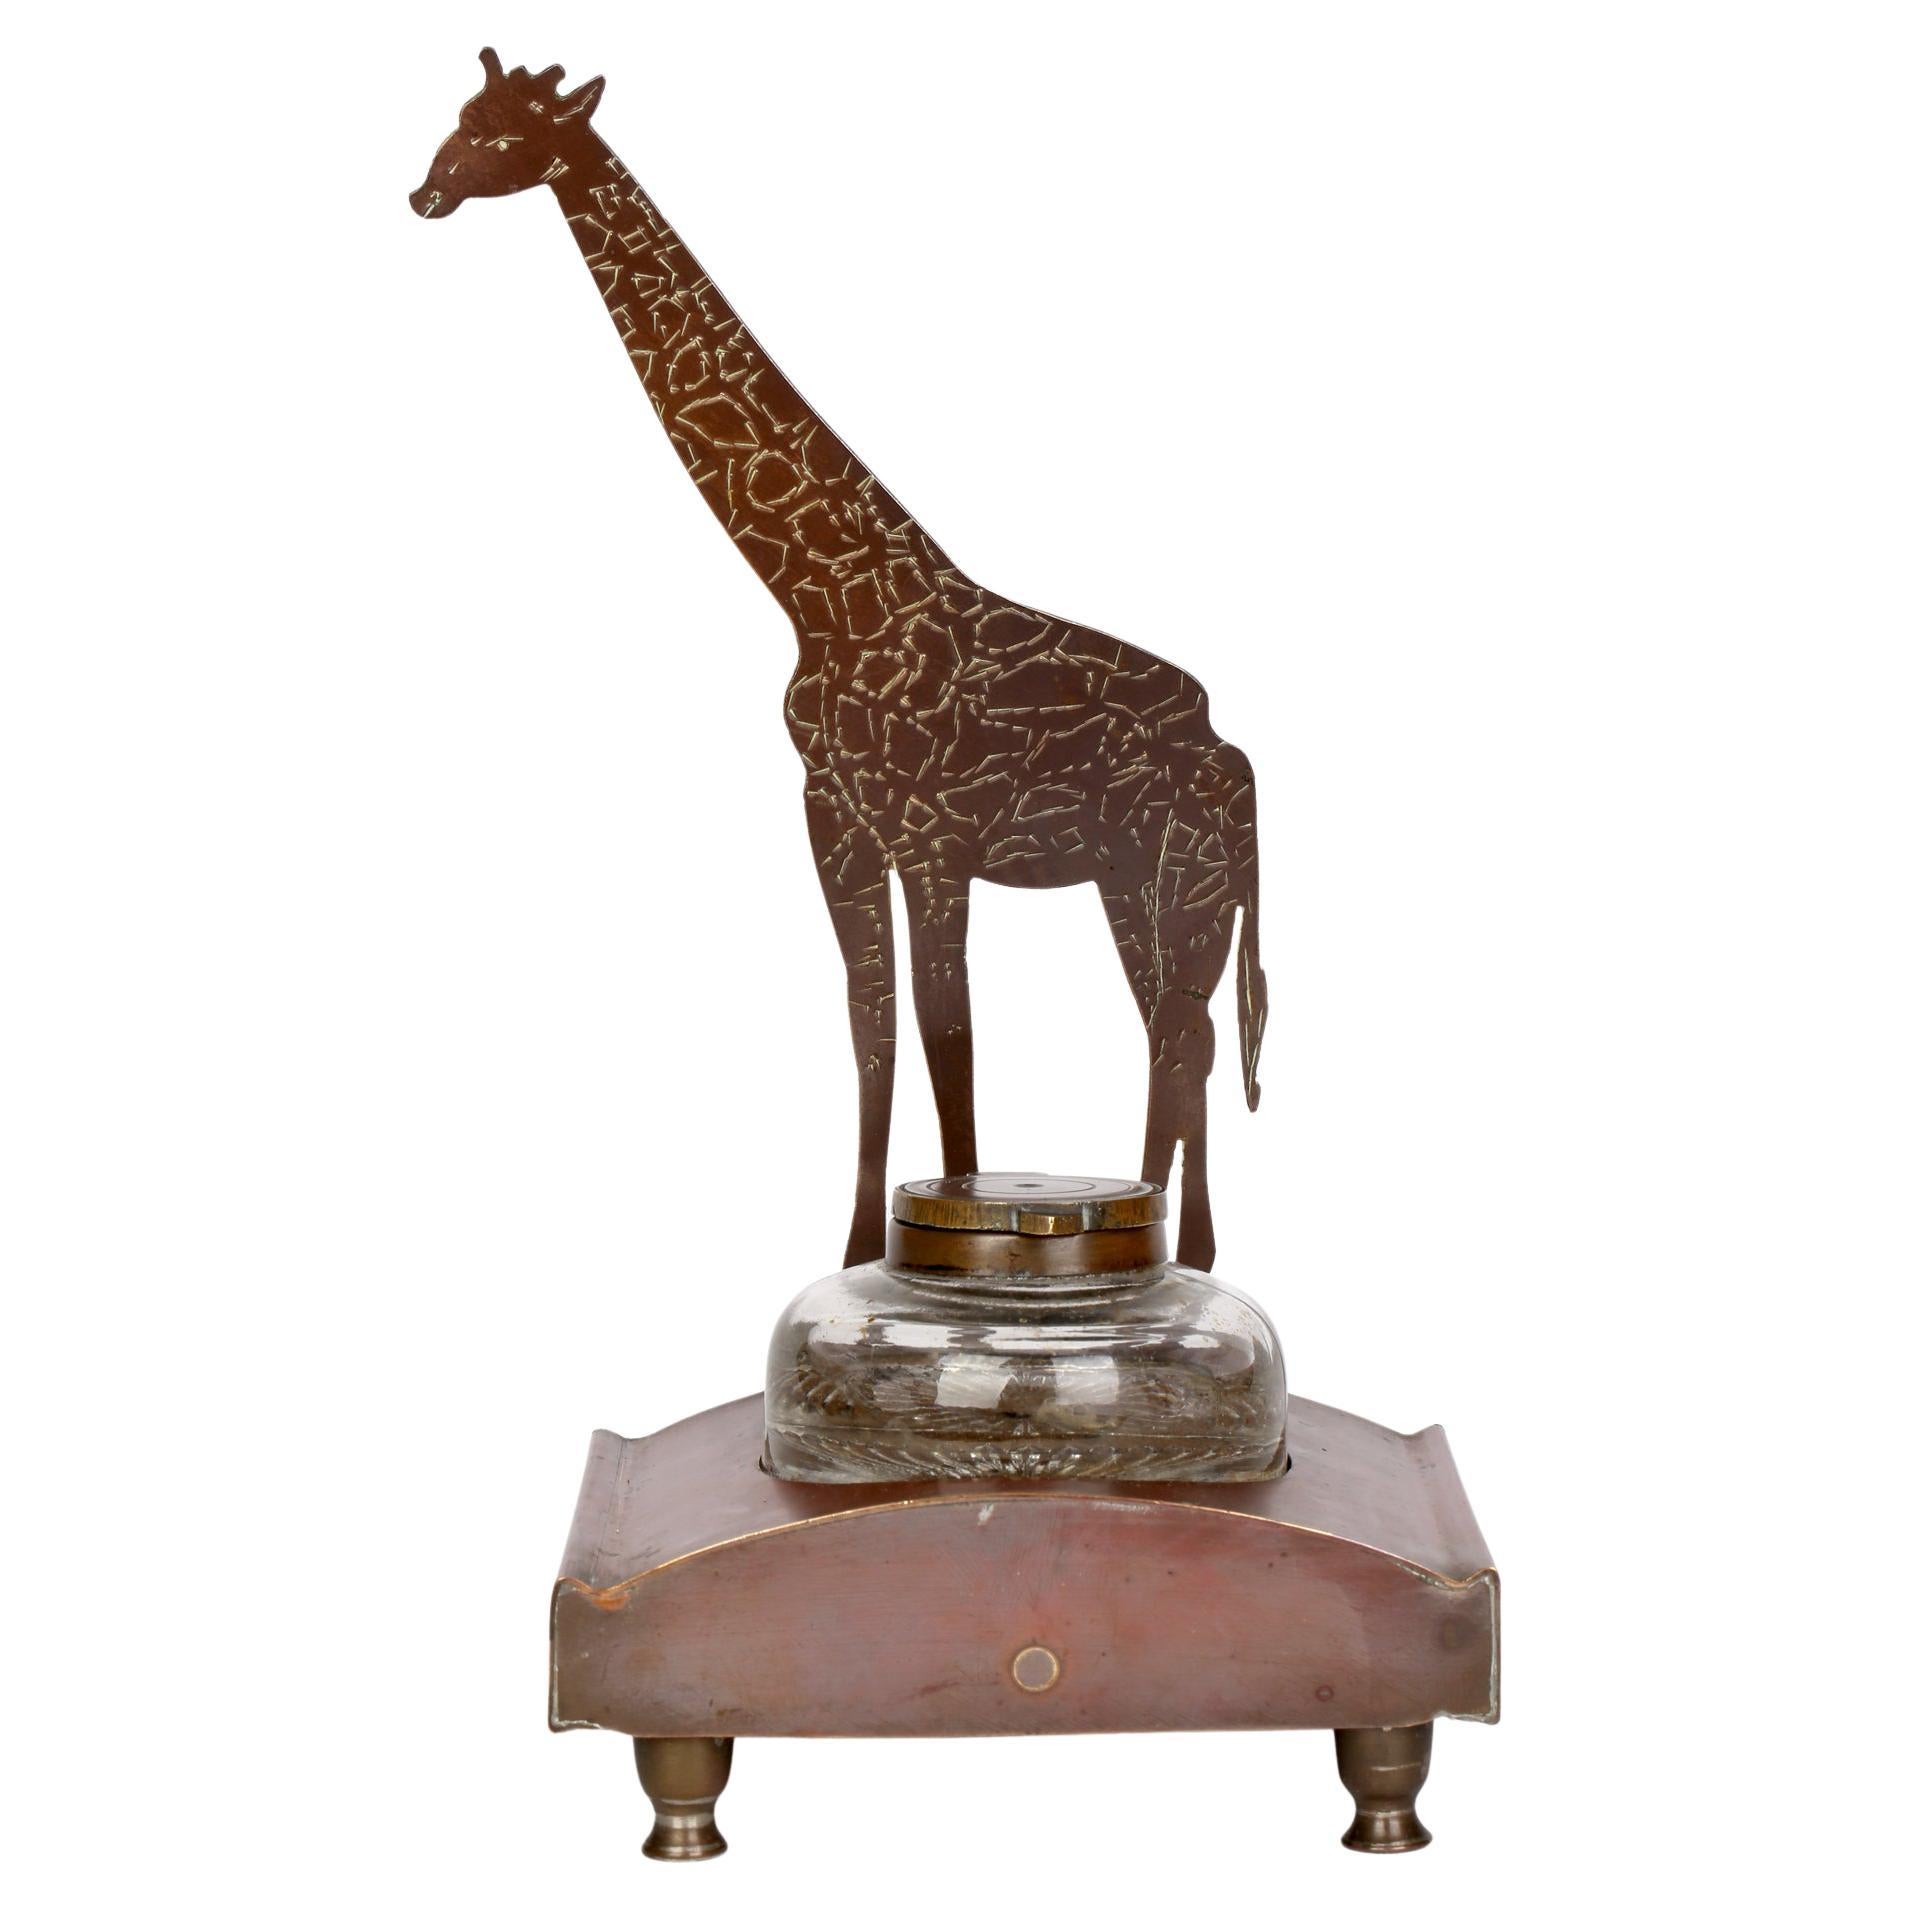 Ignatius Taschner 'German, 1871-1913' Jugendstil Giraffe Mounted Ink Stand